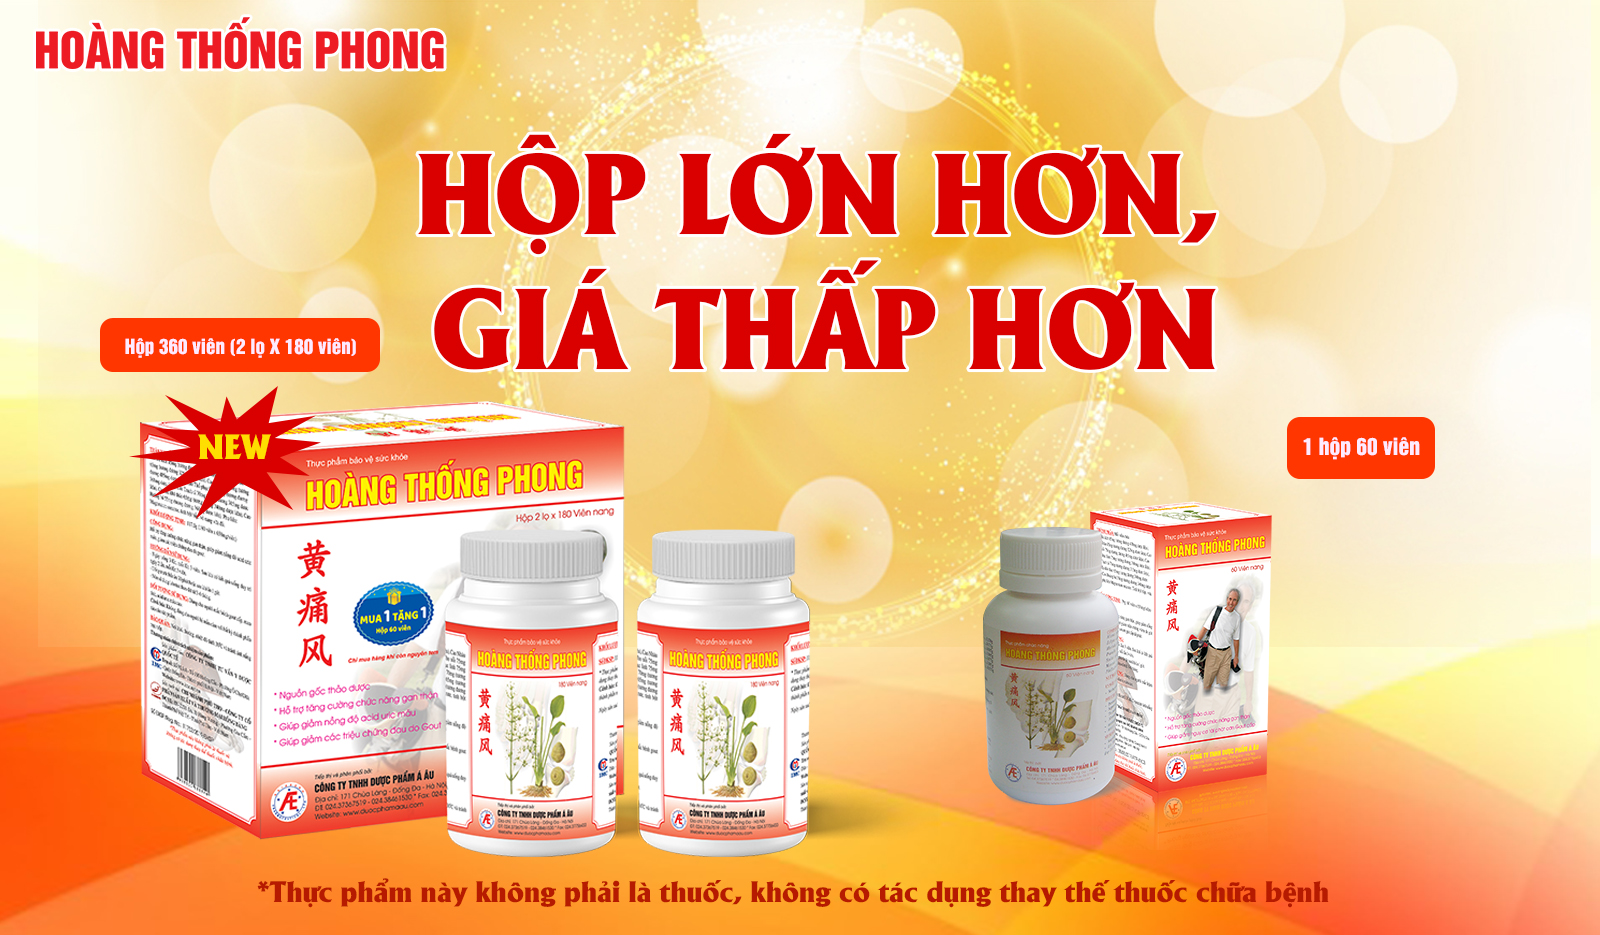 Hoàng Thống Phong giúp cải thiện bệnh gút hiệu quả